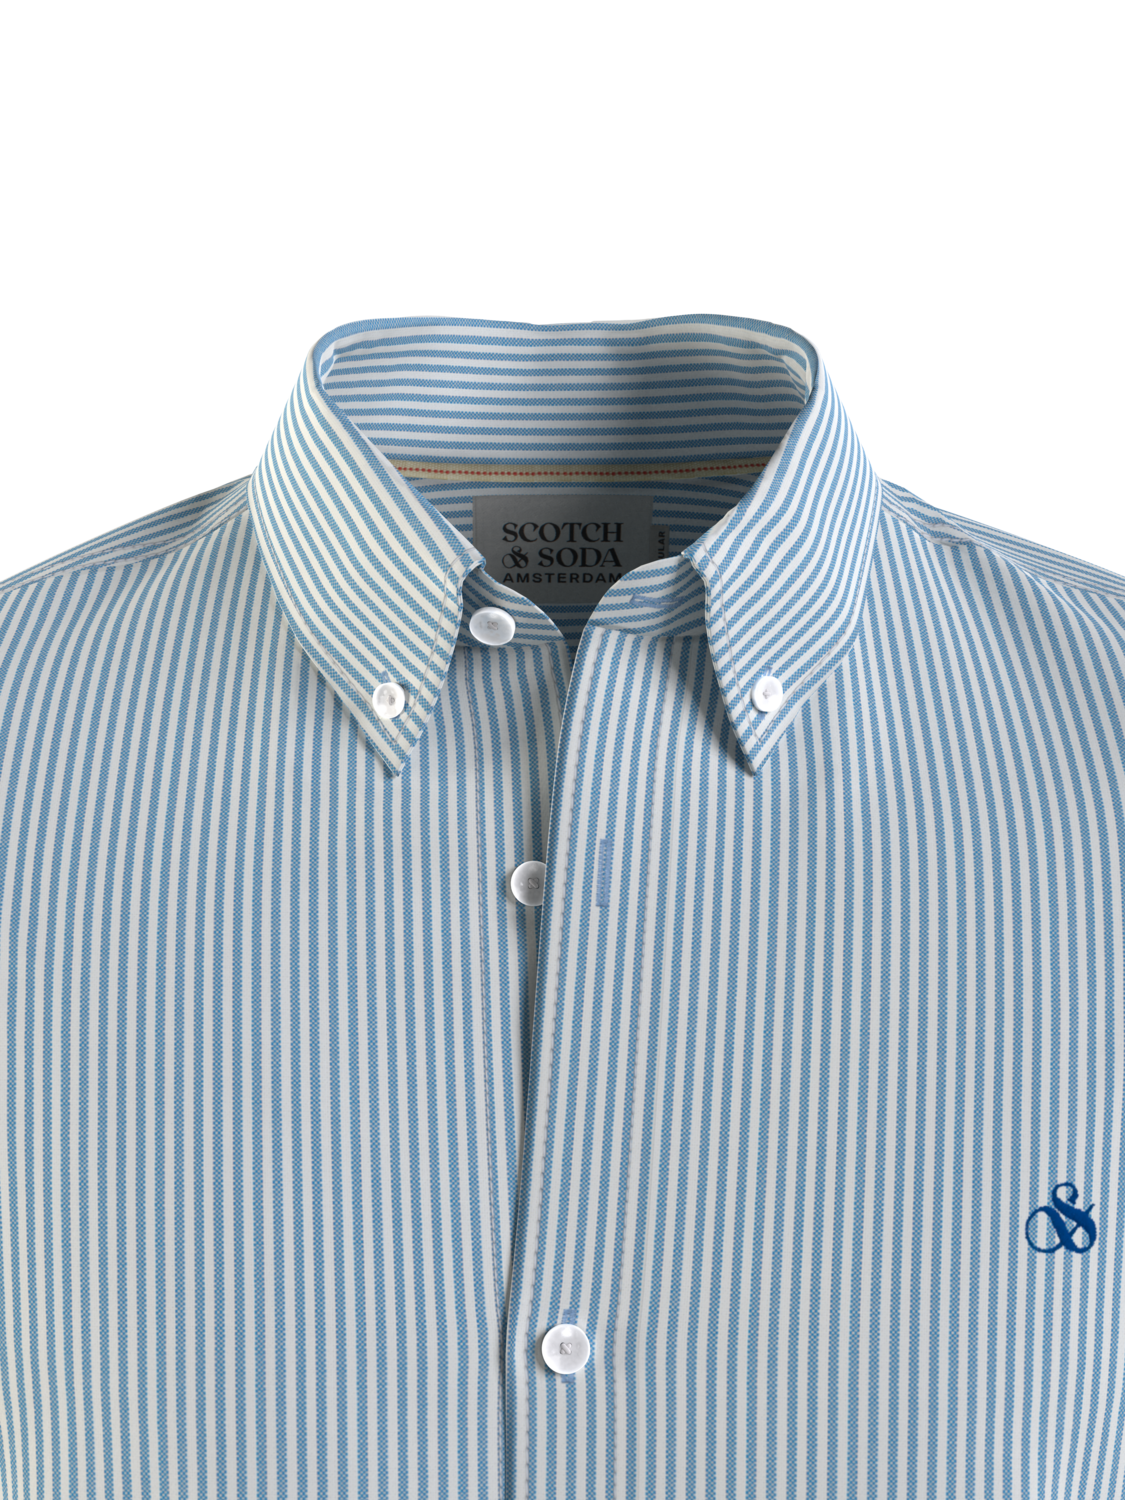 Scotch & Soda - Organic Cotton Shirt - Blue & White Stripe